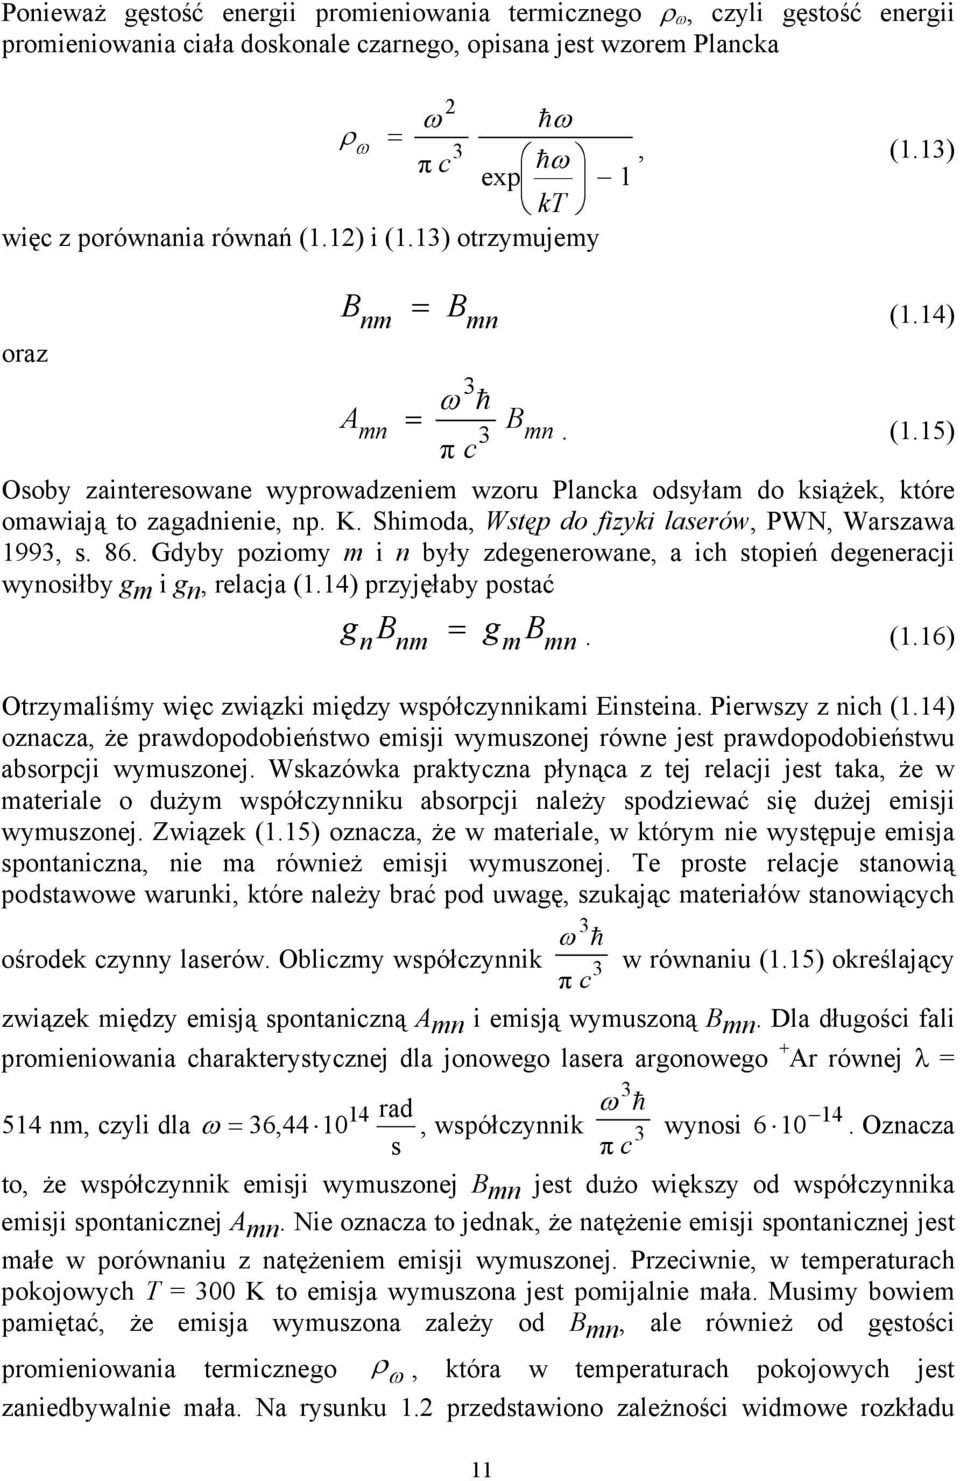 K. Shimoda, Wstęp do fizyki laserów, PWN, Warszawa 1993, s. 86. Gdyby poziomy m i n były zdegenerowane, a ich stopień degeneracji wynosiłby gm i gn, relacja (1.